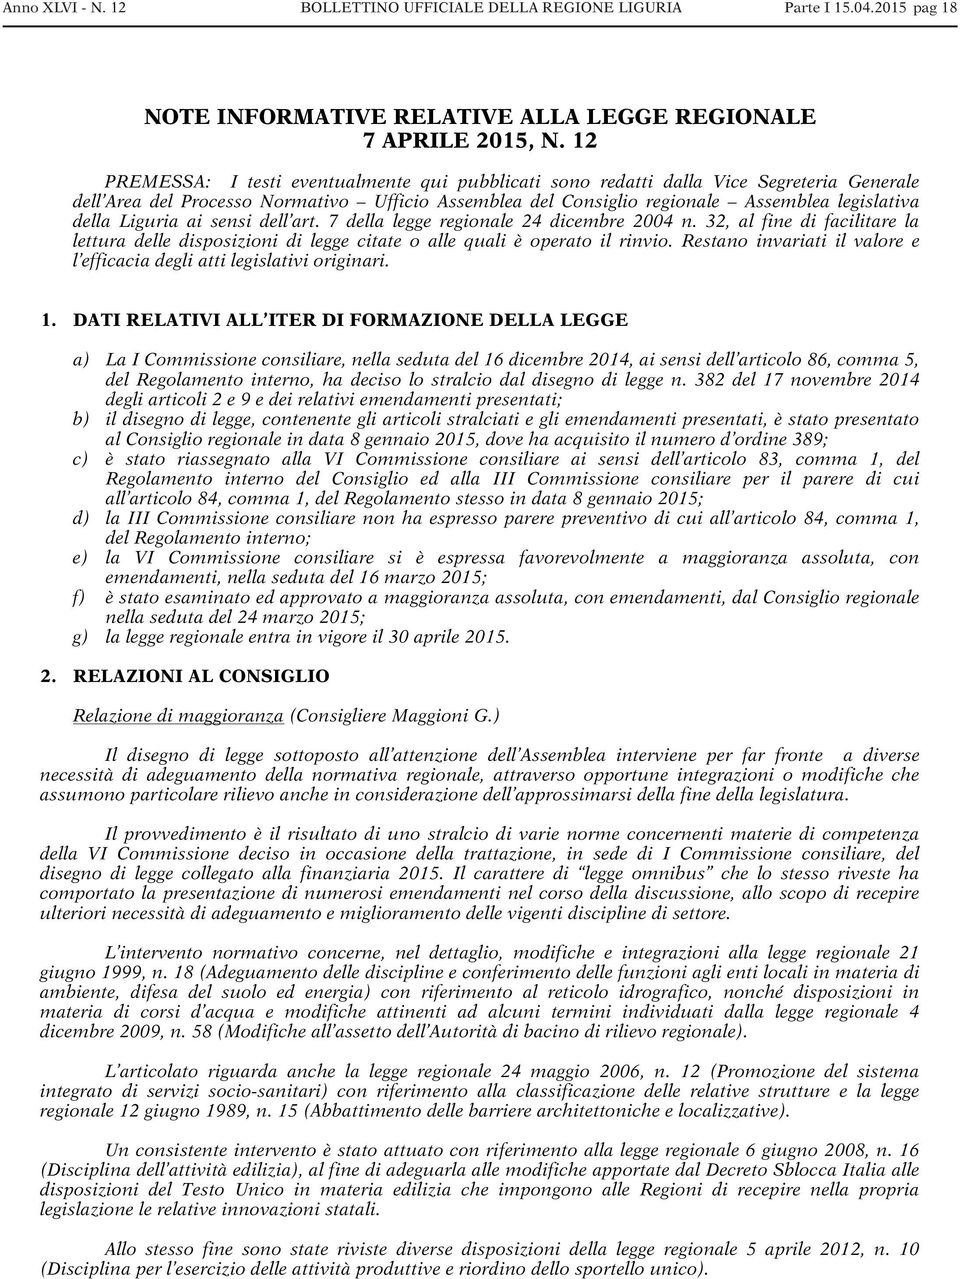 Liguria ai sensi dell art. 7 della legge regionale 24 dicembre 2004 n. 32, al fine di facilitare la lettura delle disposizioni di legge citate o alle quali è operato il rinvio.